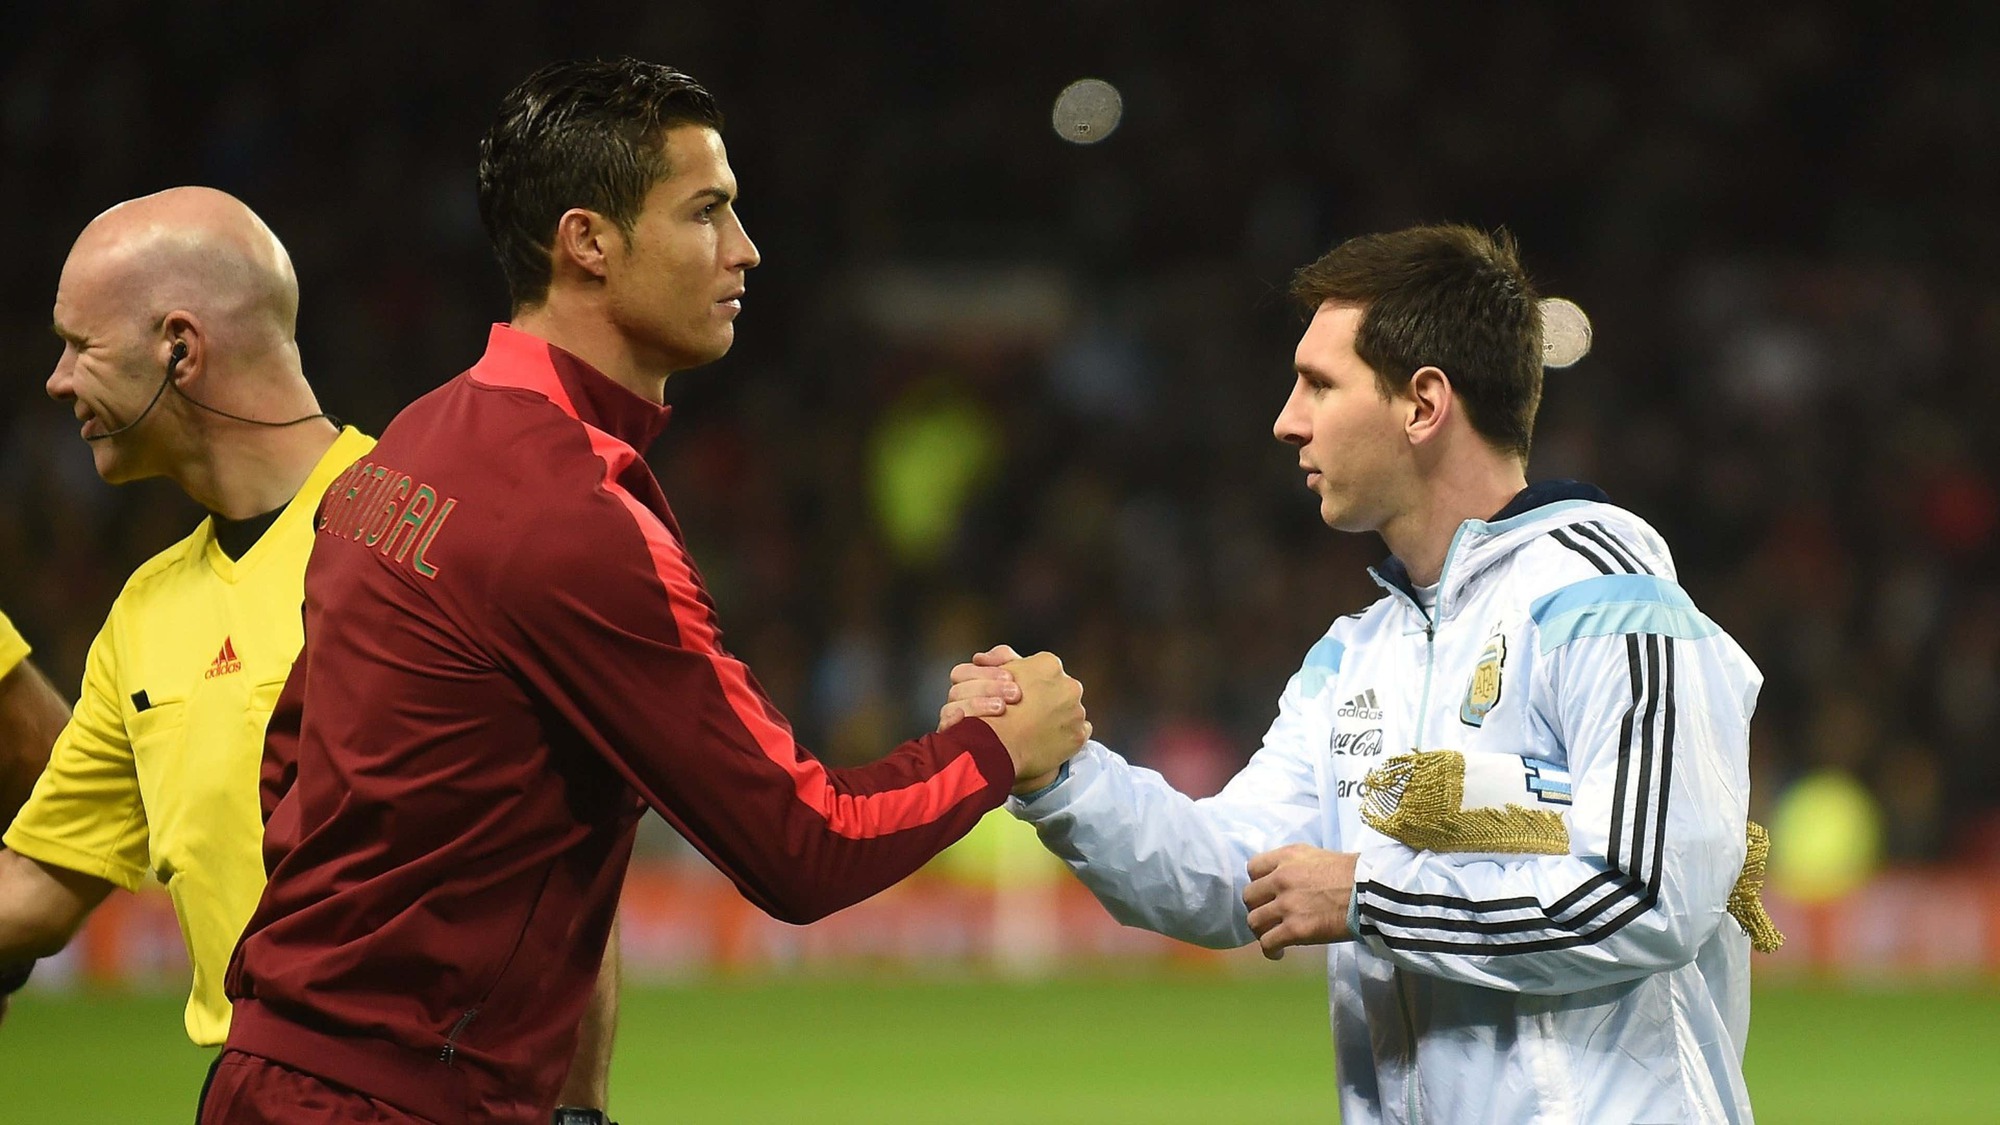 Tất tần tật thống kê của Messi và Ronaldo: Cầu thủ vĩ đại nhất lịch sử lộ diện? - Ảnh 2.